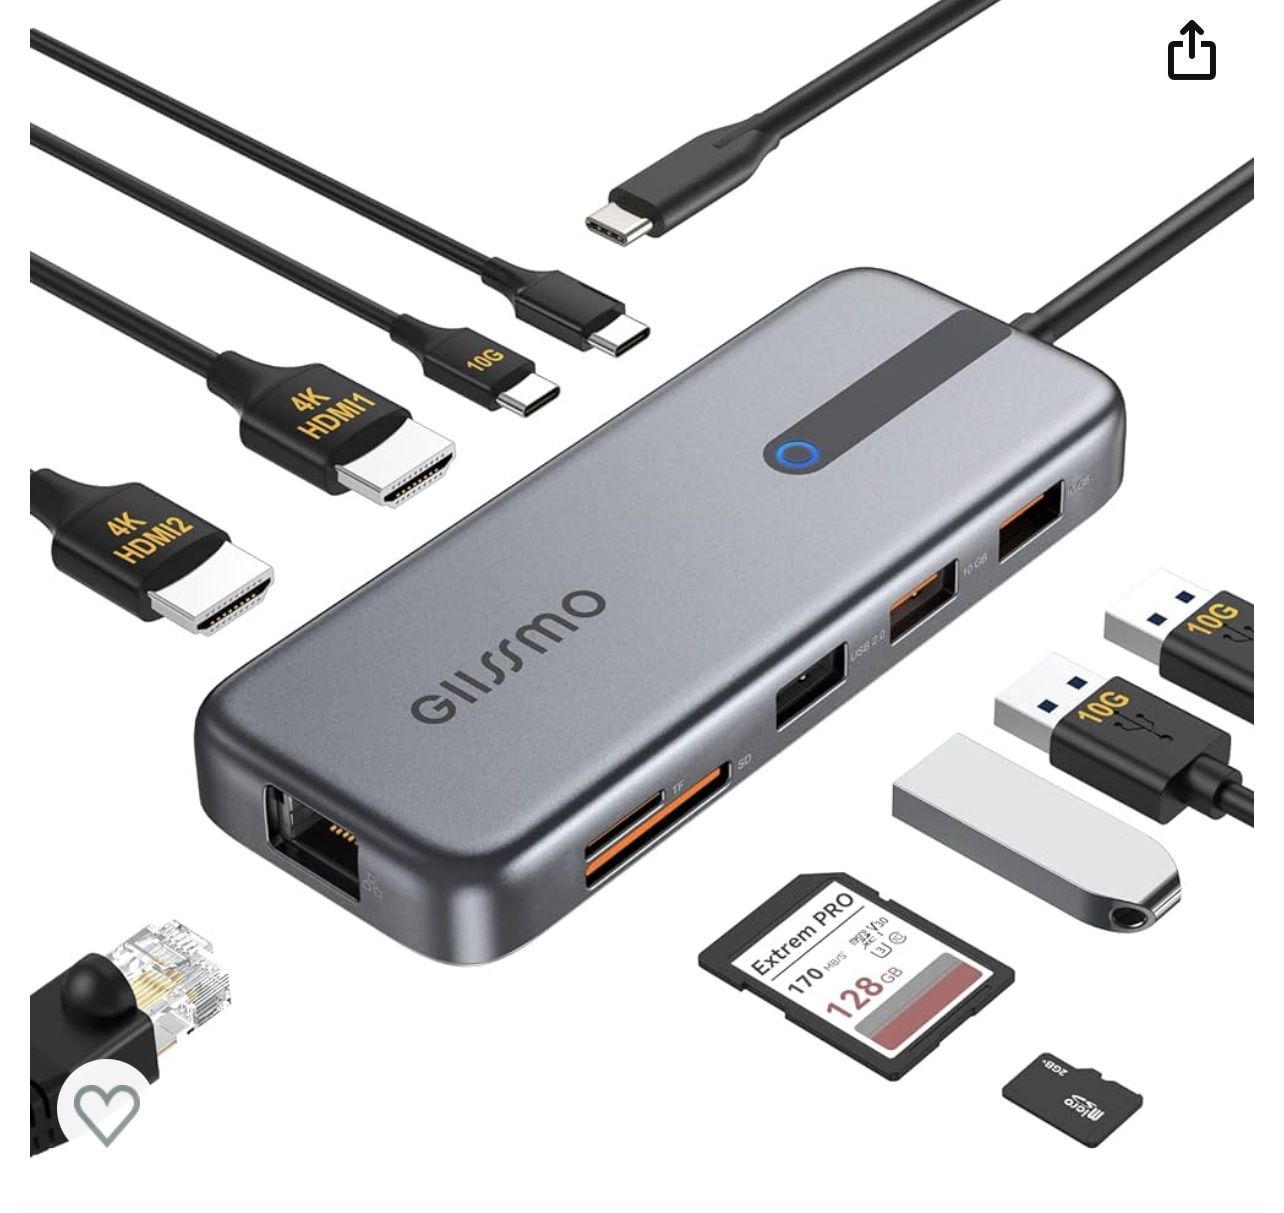 GIISSMO 10 In 1 USB HUB